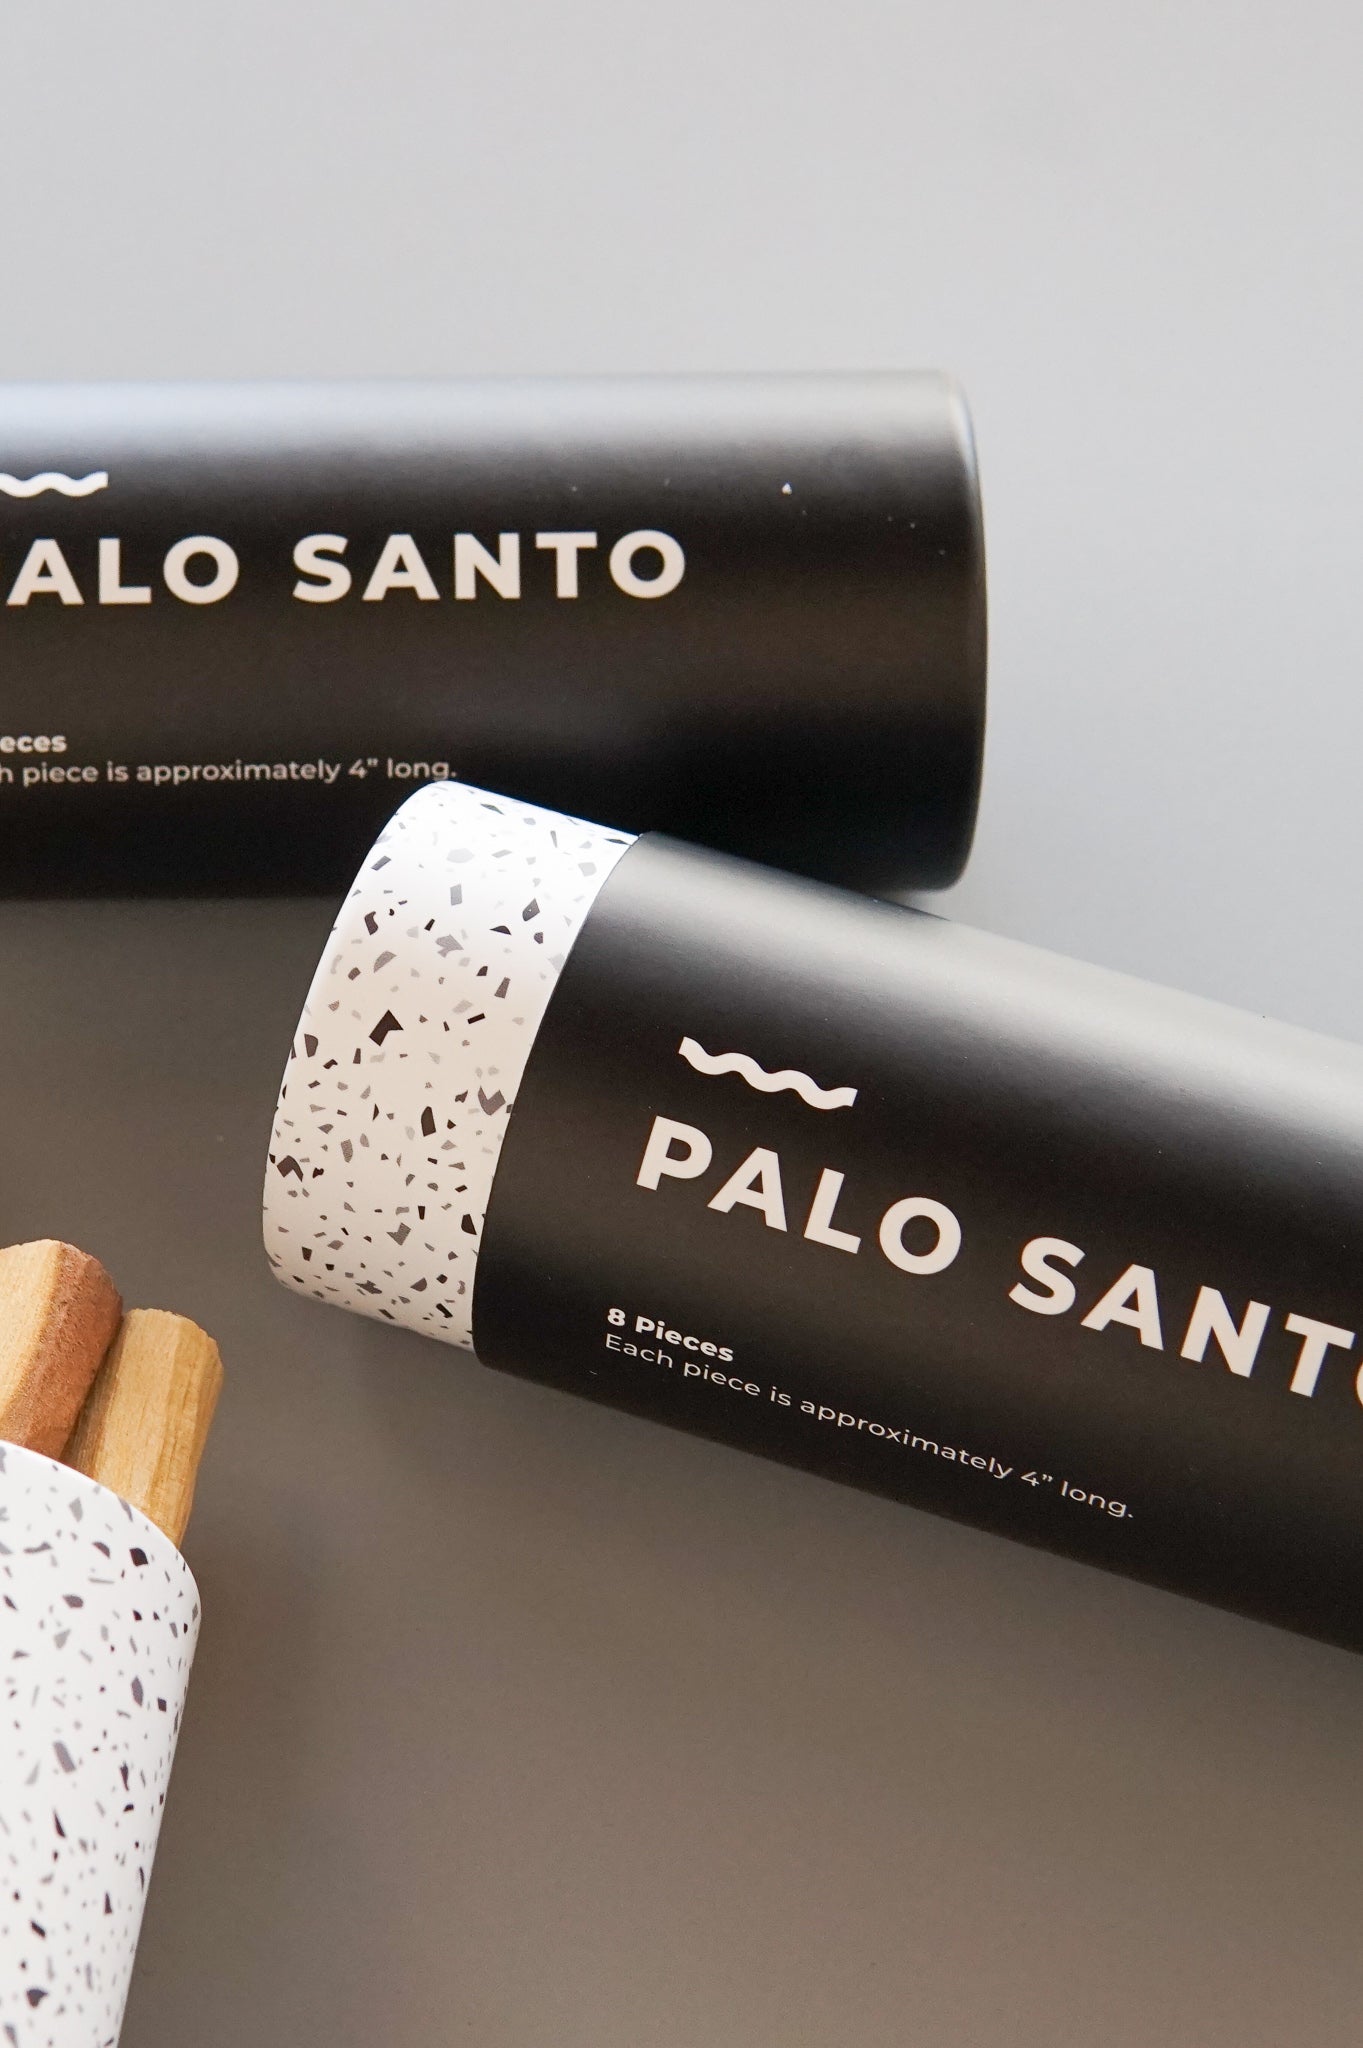 Pretti Cool: Palo Santo Incense